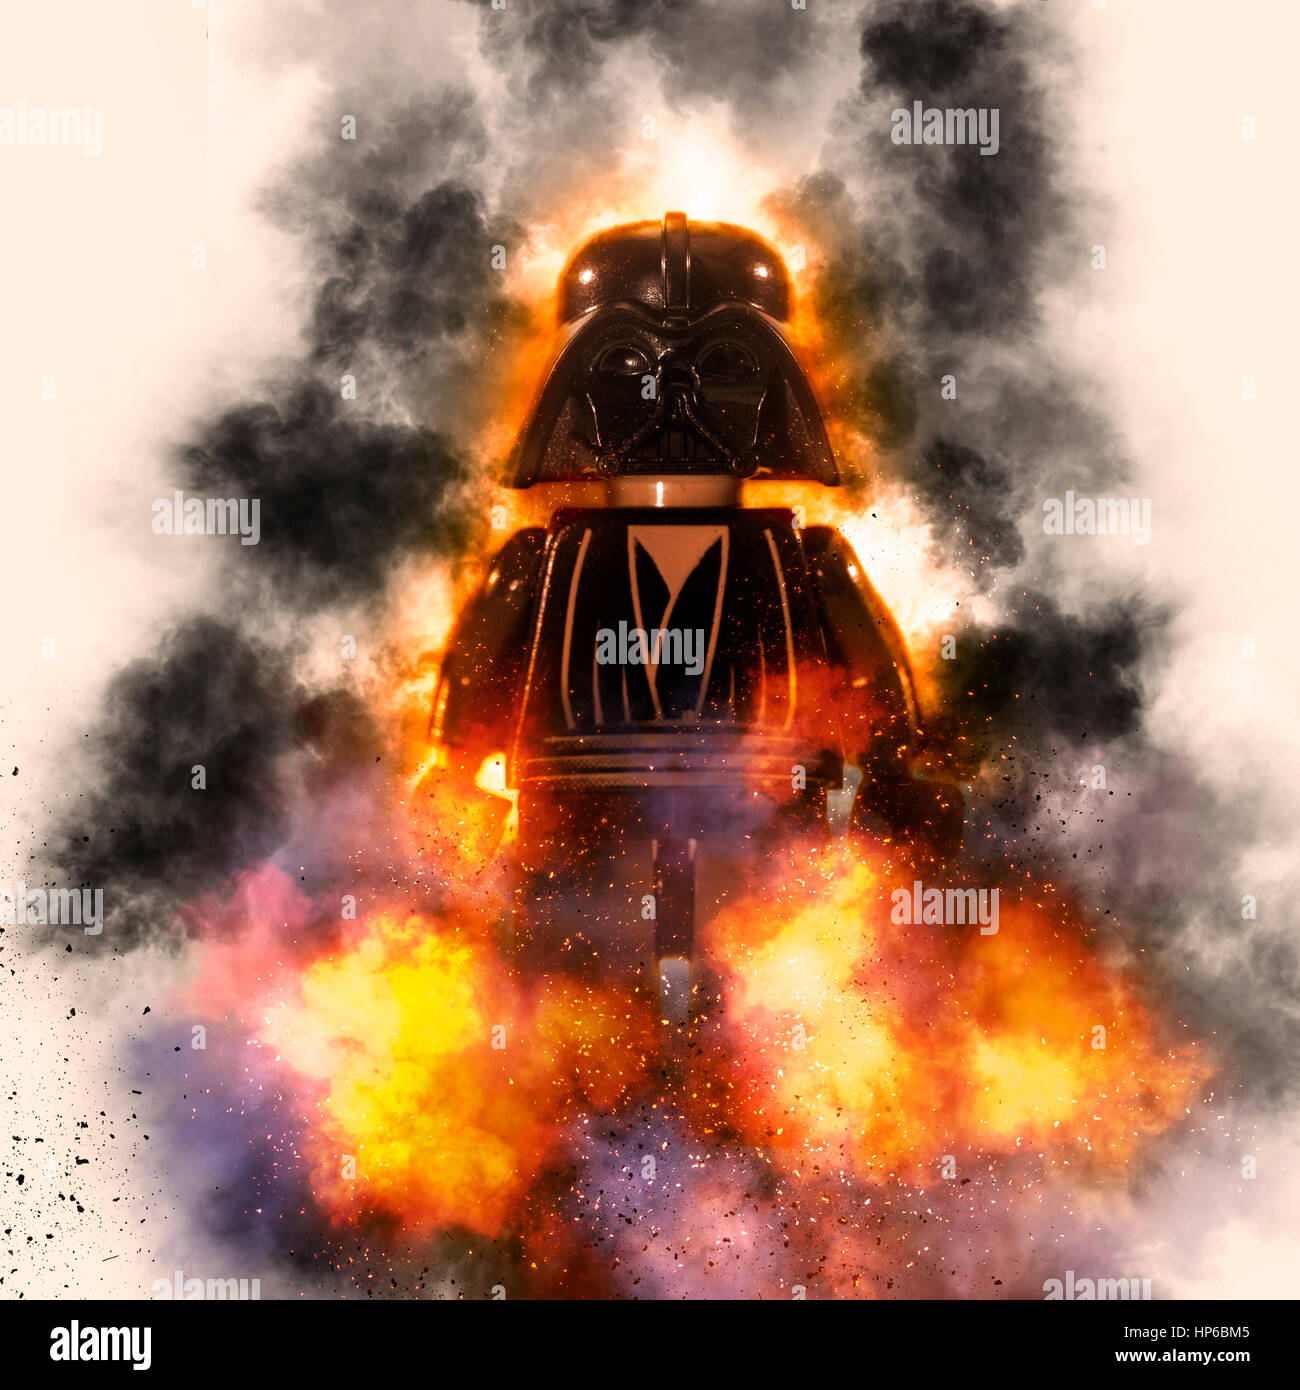 Digital verbesserte Bild von Darth Vader Star Wars Actionfigur Stockfoto